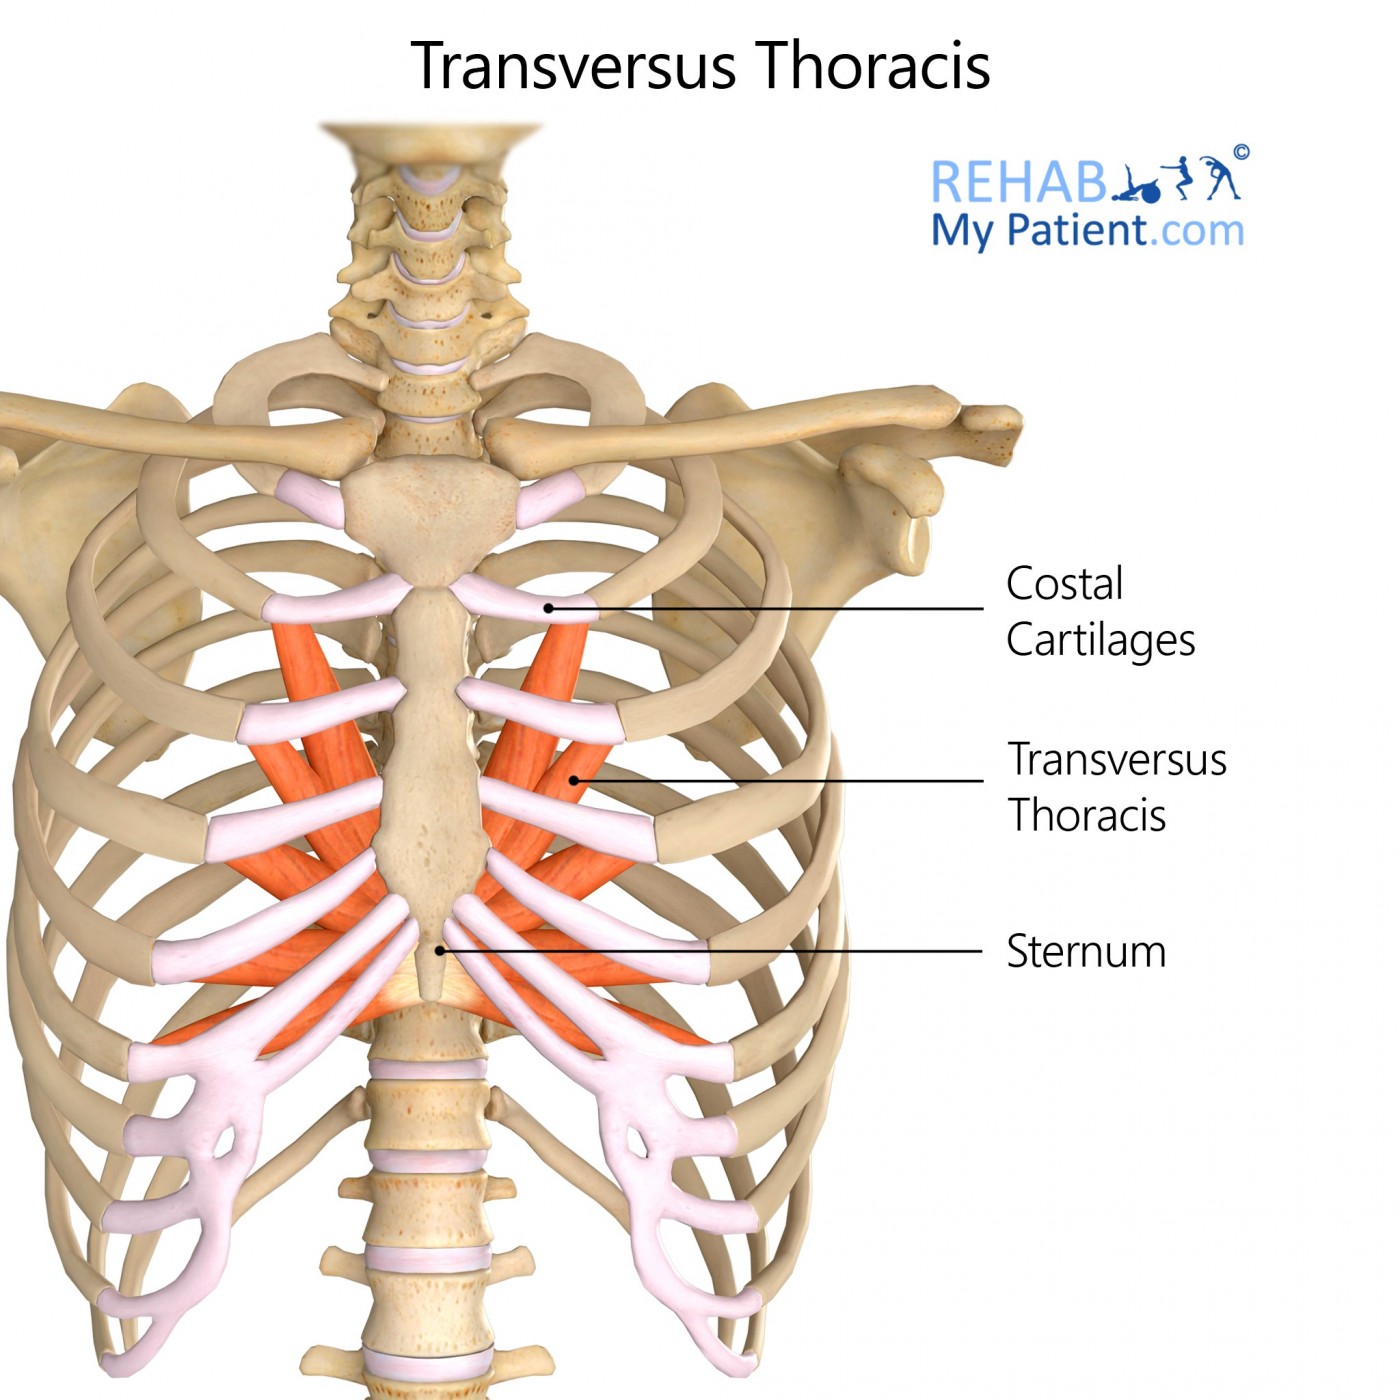 Transversus Thoracis